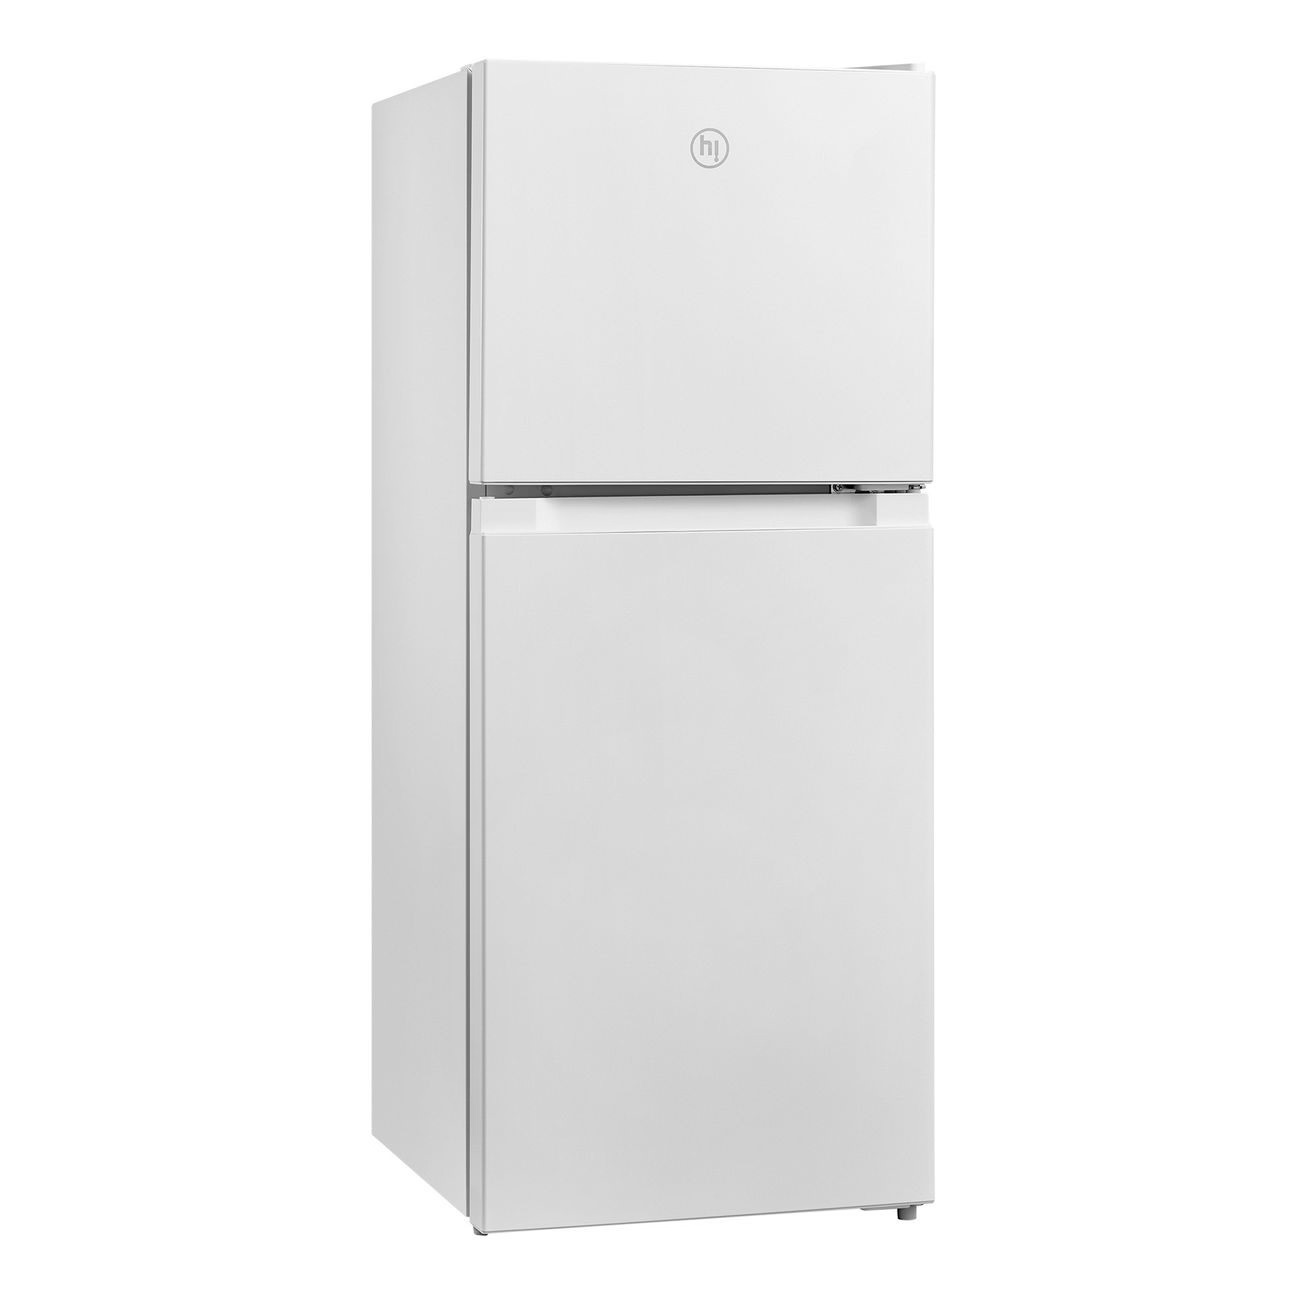 Холодильник Hi HTDN011950RW белый холодильник haier a2f637cgg золотистый